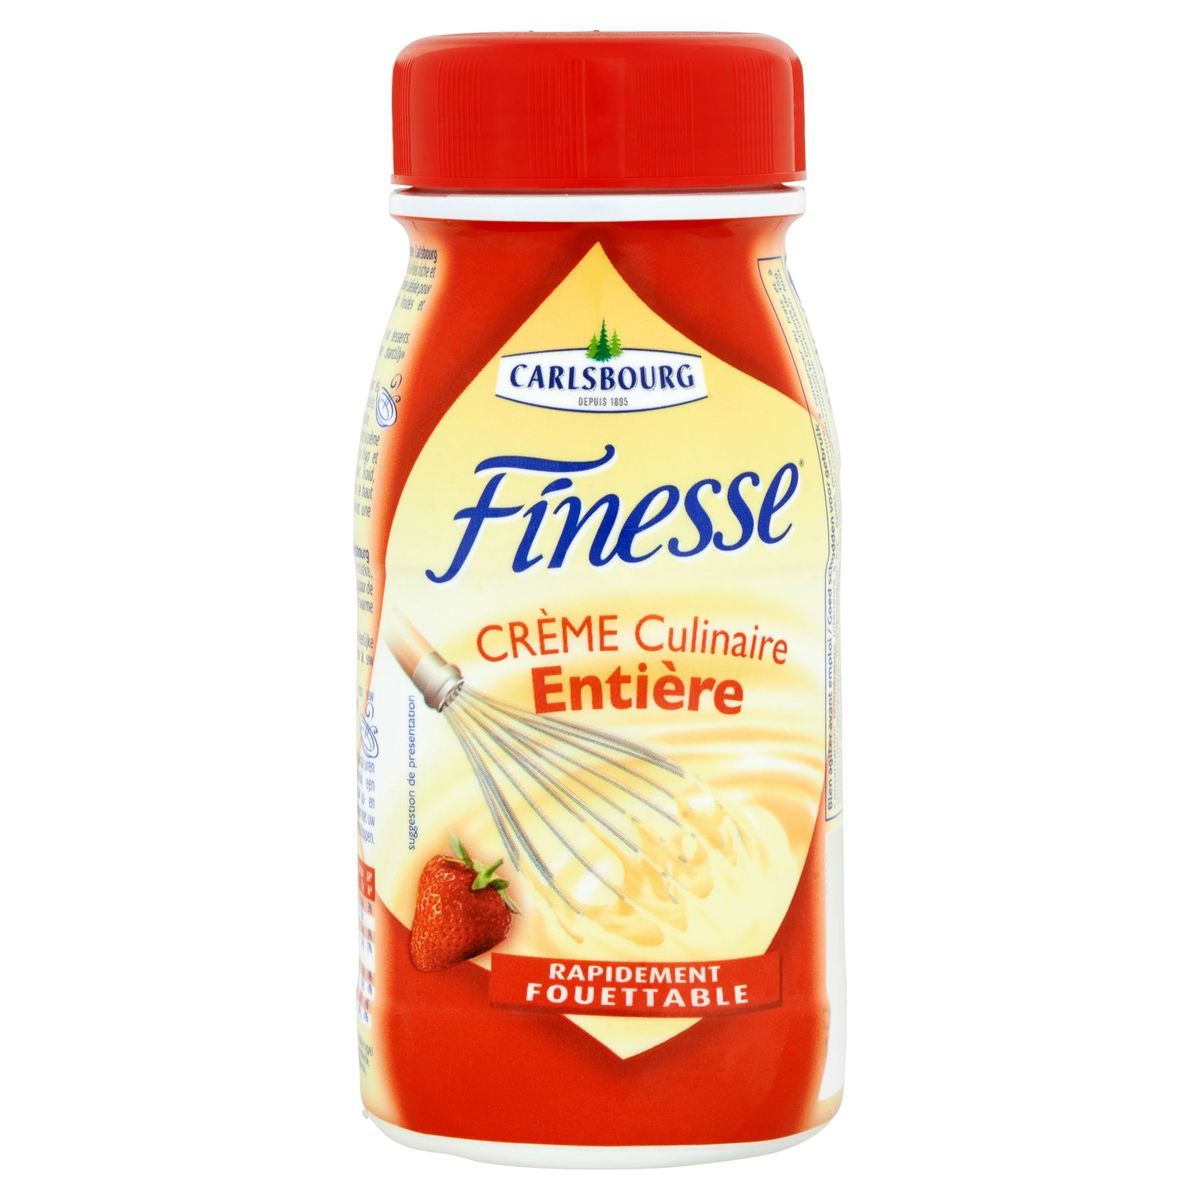 Carlsbourg Finesse Crème Culinaire Entière 25 cl